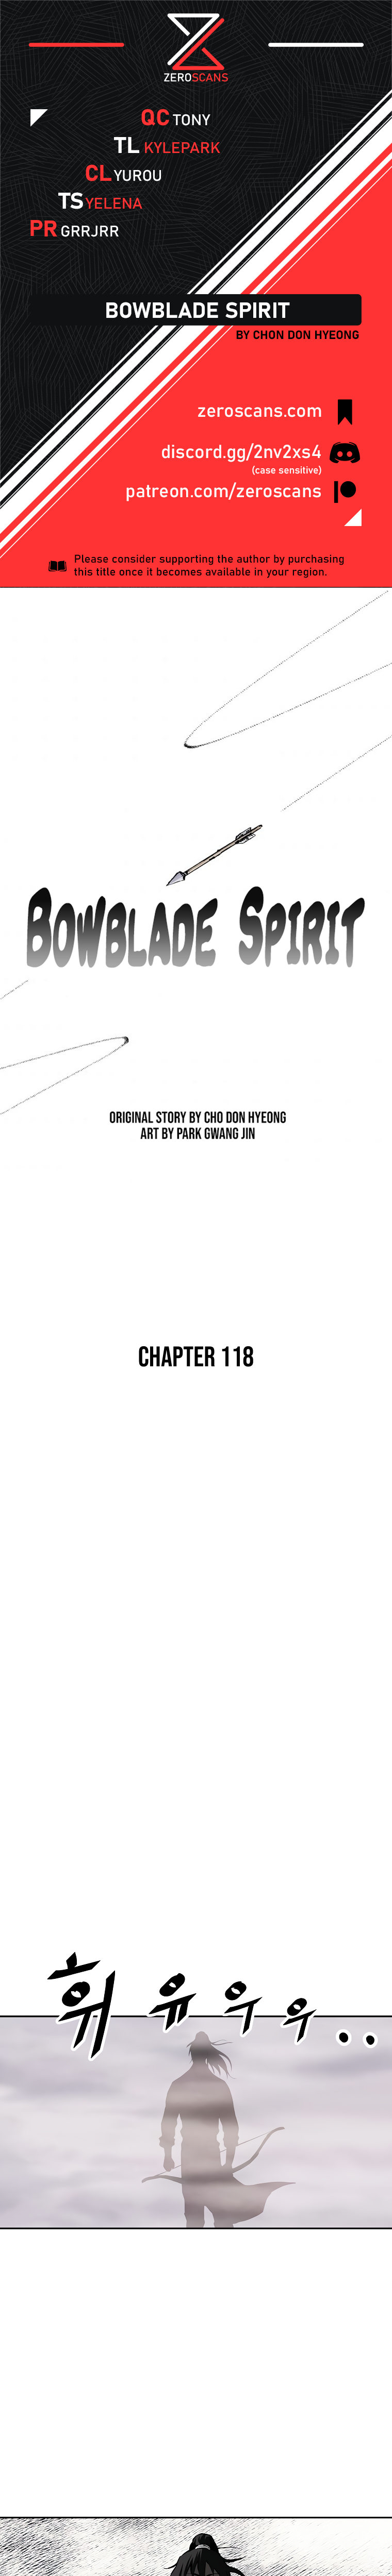 Bowblade Spirit - Chapter 118 Page 1